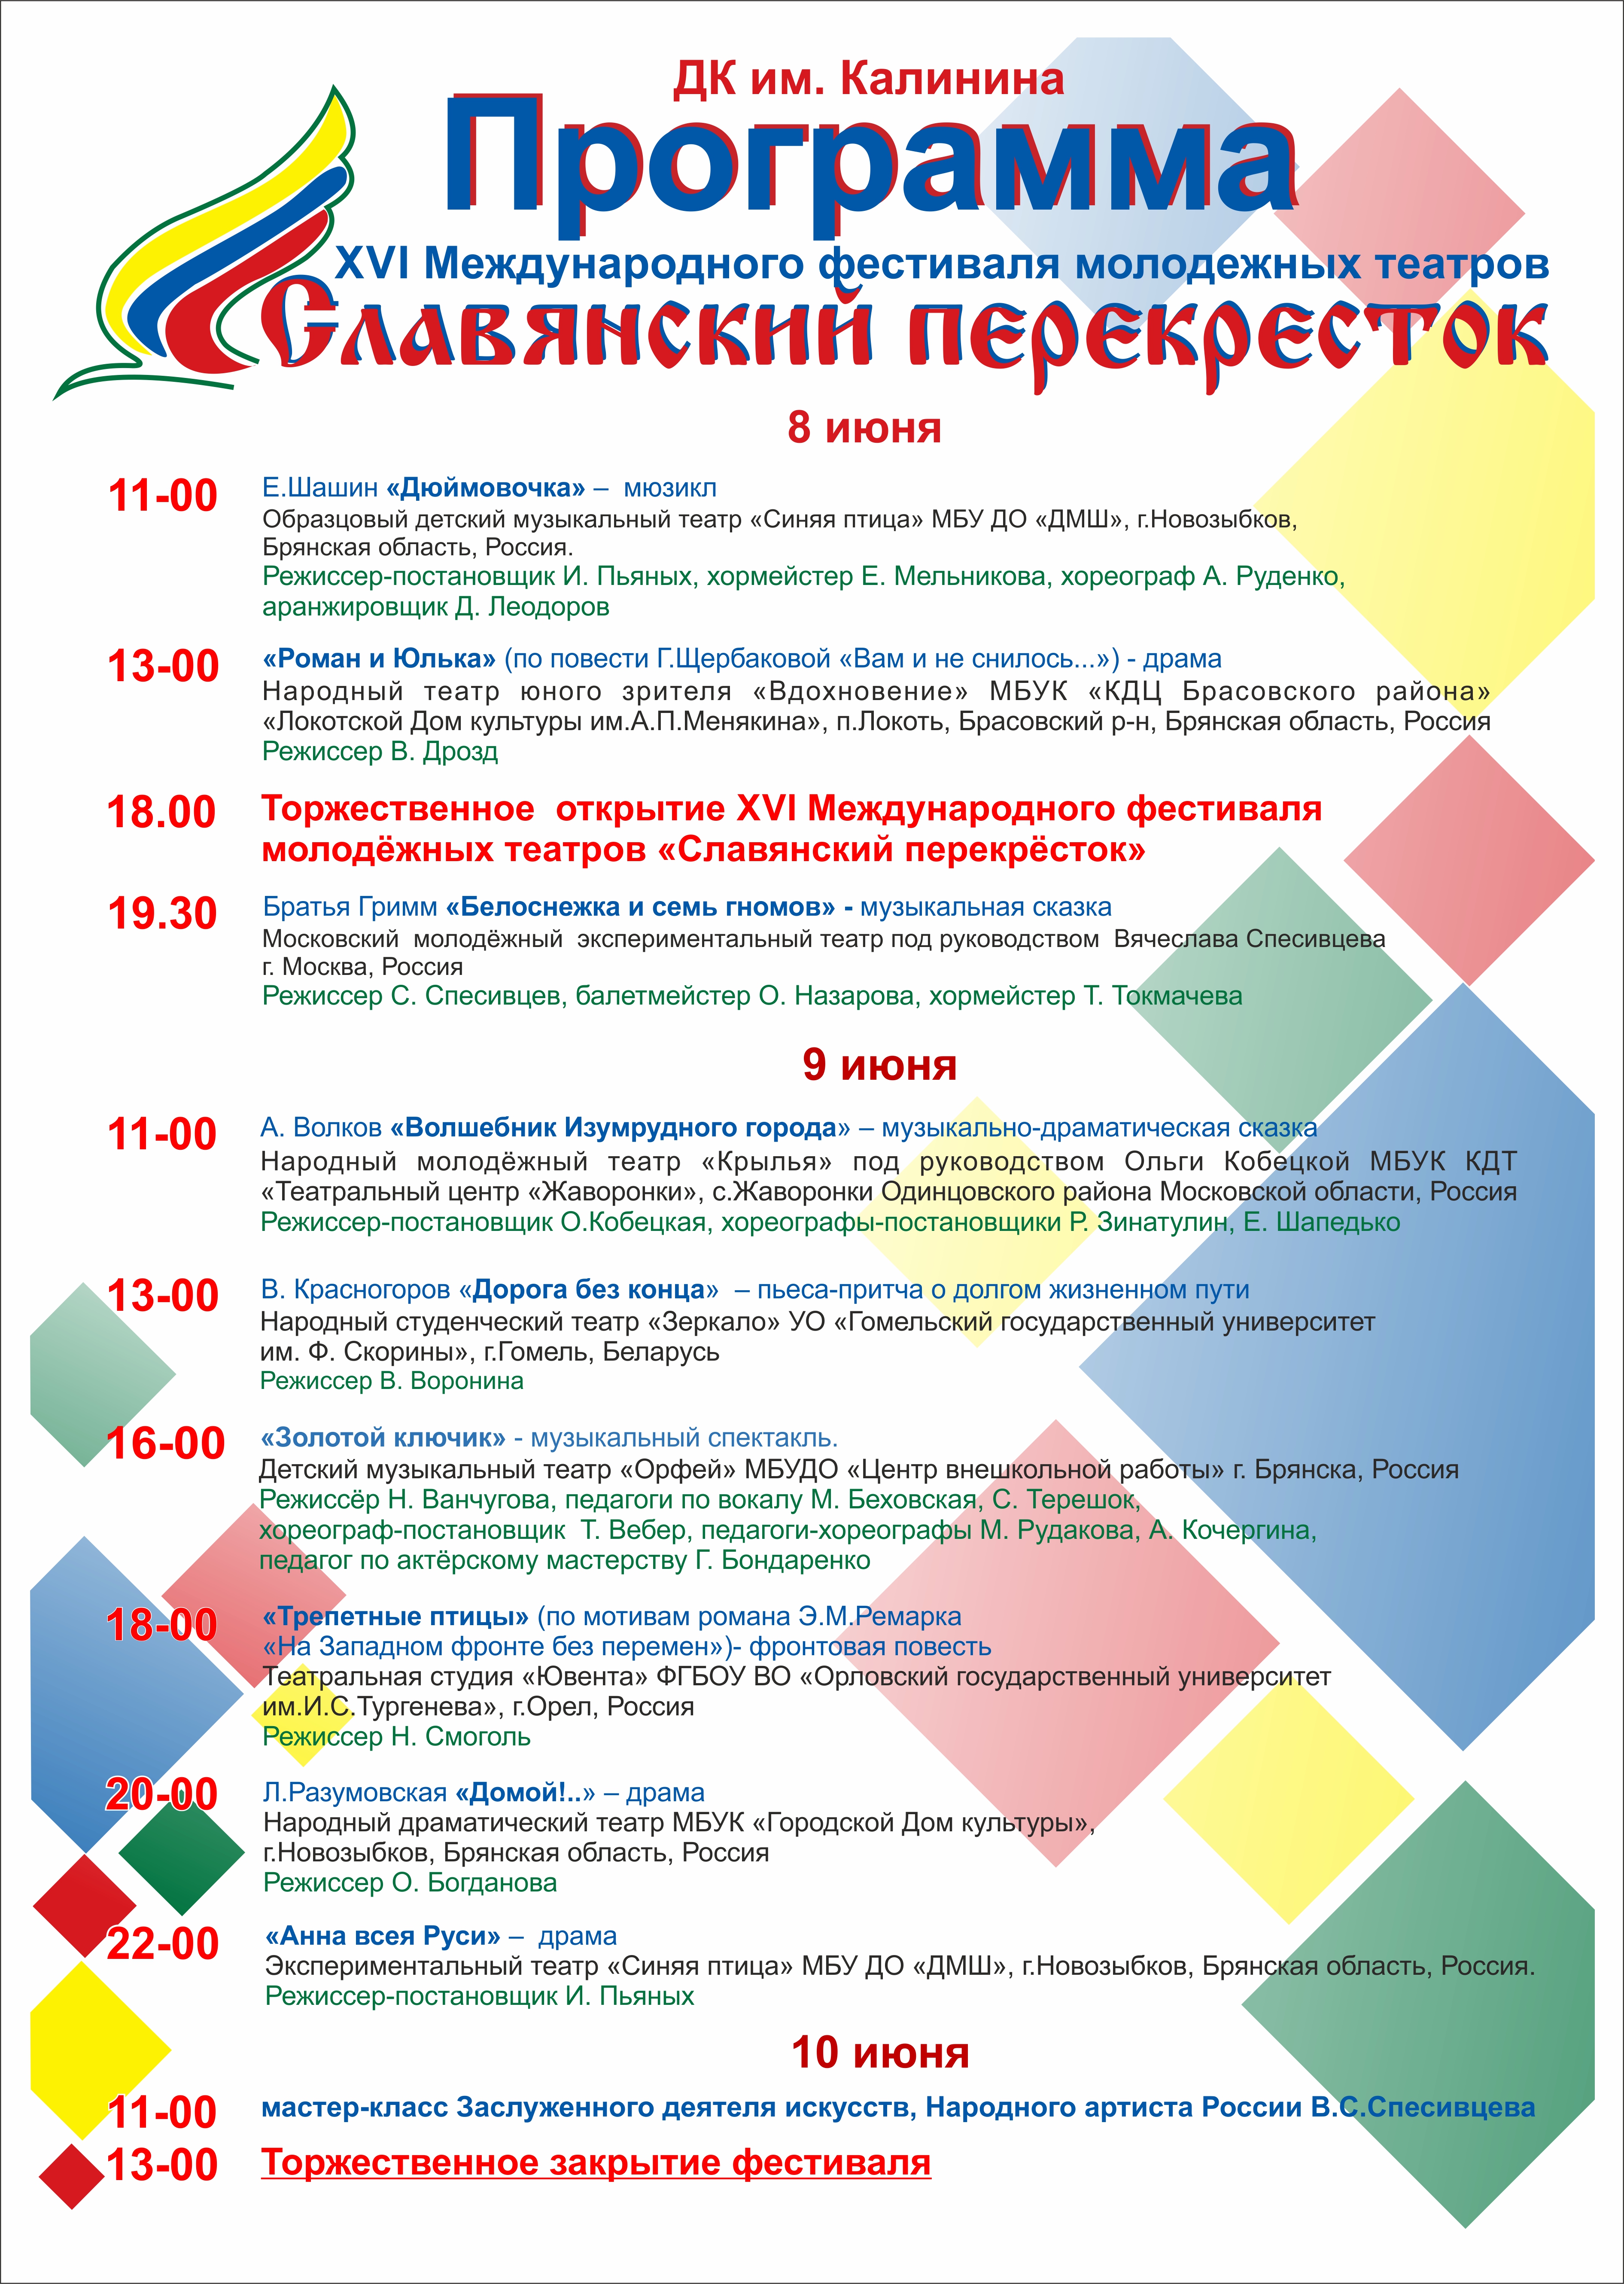 XVI «Славянский перекресток» откроется завтра в Новозыбкове